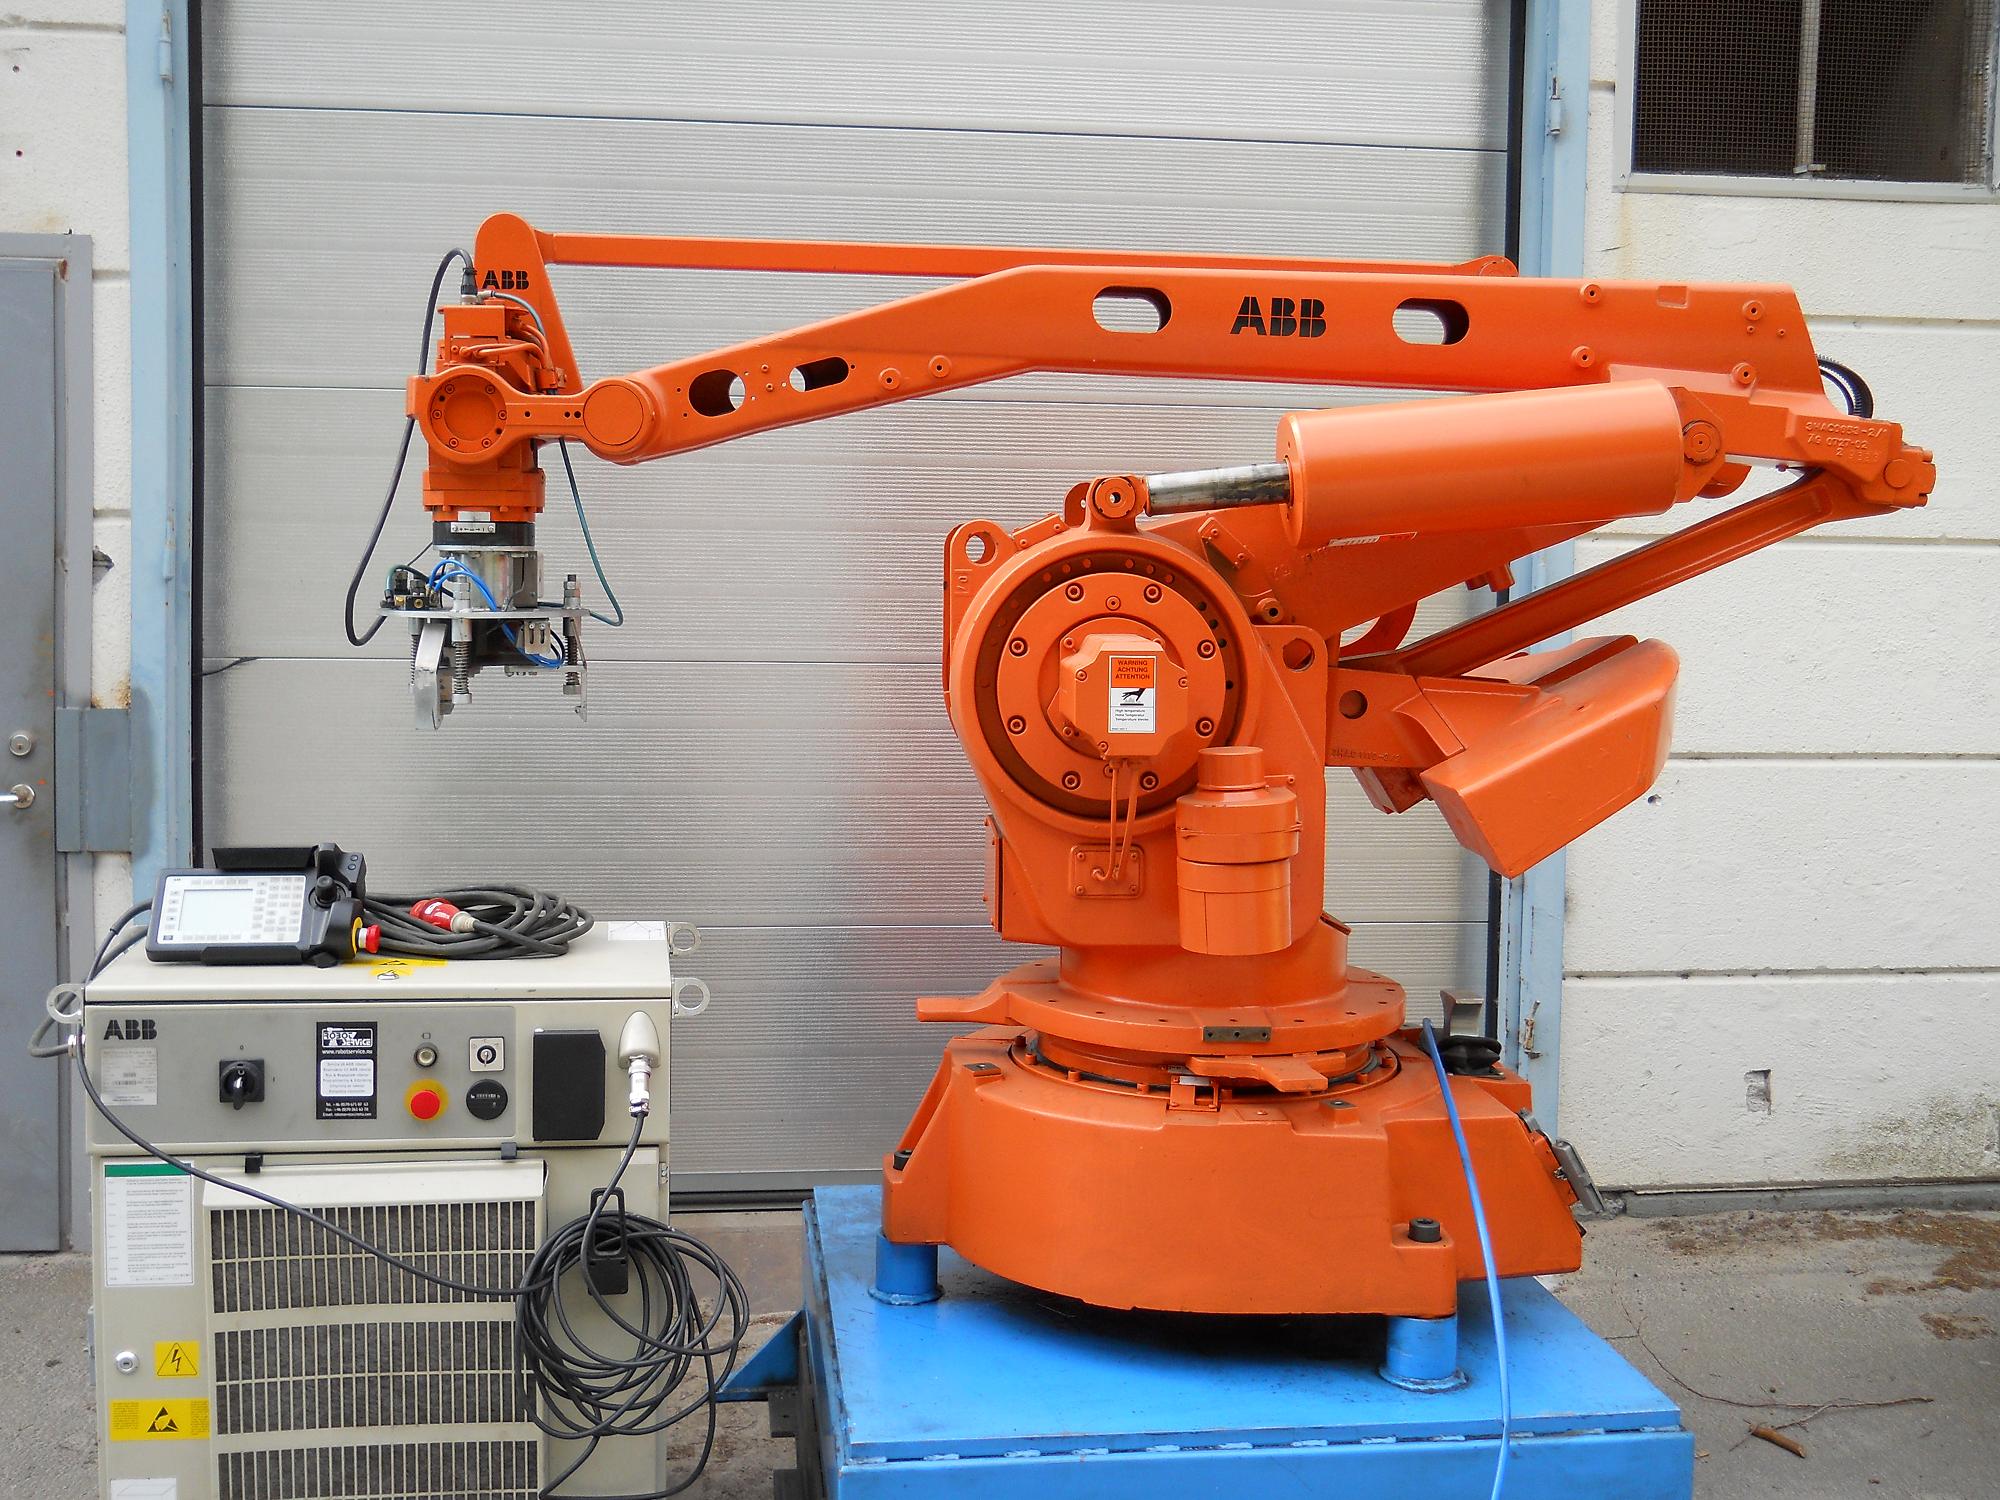 Манипуляторы производственные. Манипулятор ABB IRB 6000. ABB IRB 140. Промышленный робот ABB системы IRB 6000. ABB IBR 2500 Robot Manipulator.